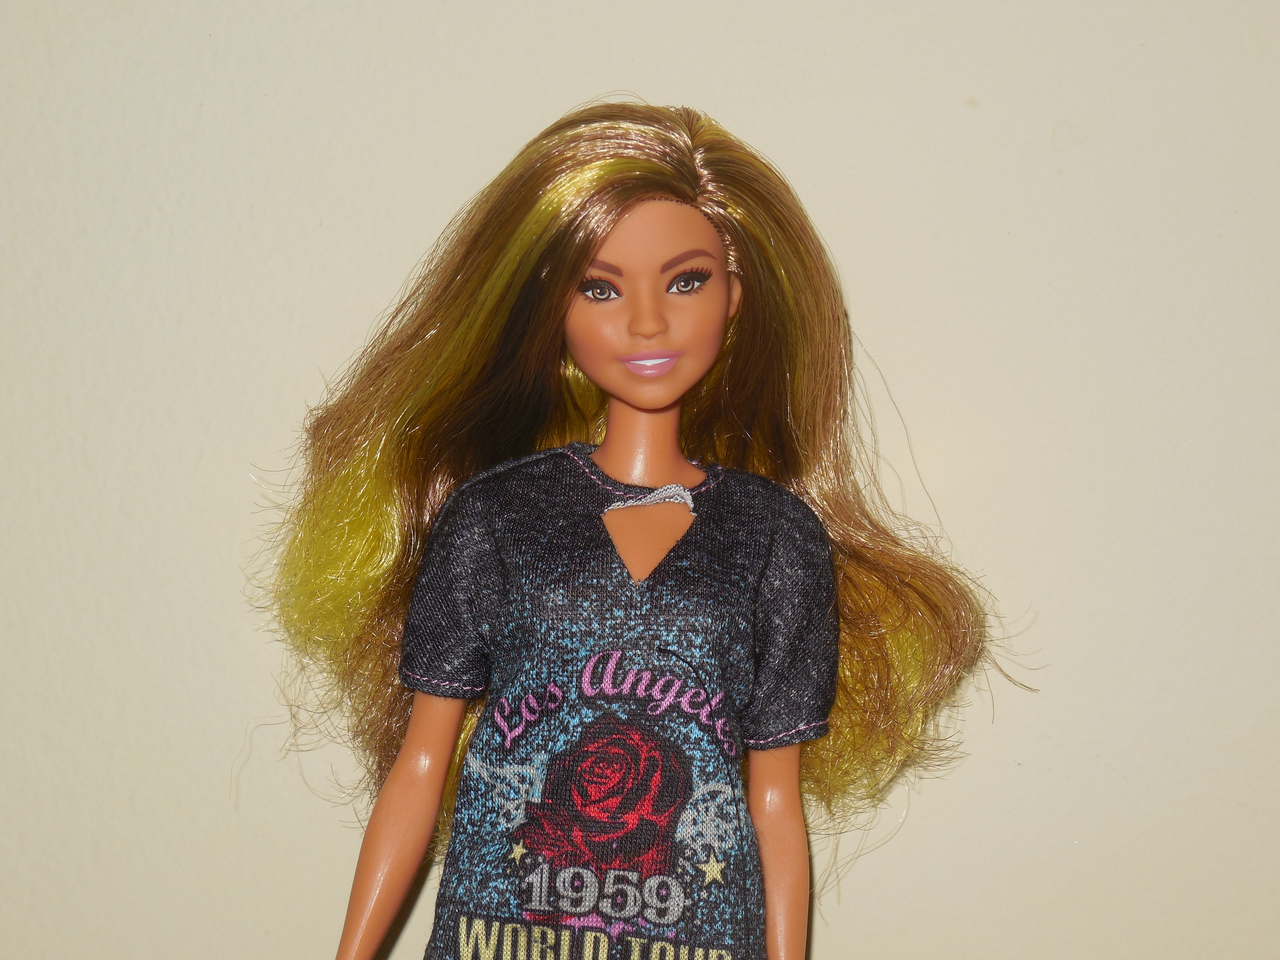 REVIEW: Barbie Fashionistas Rockstar Glam 